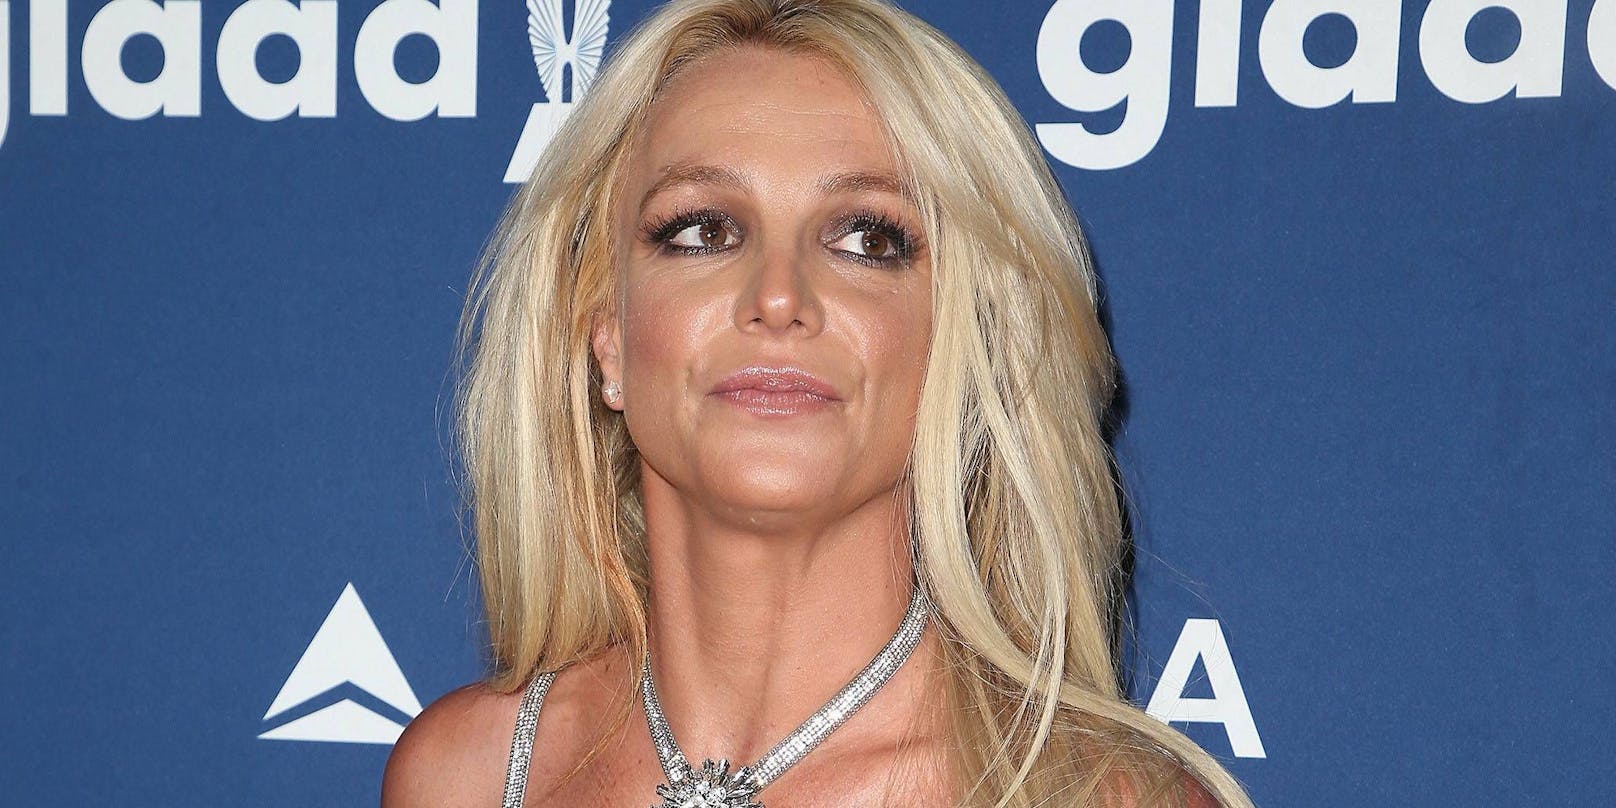 Popstar Britney Spears meldet sich mit einer besorgniserregenden Nachricht auf Instagram.